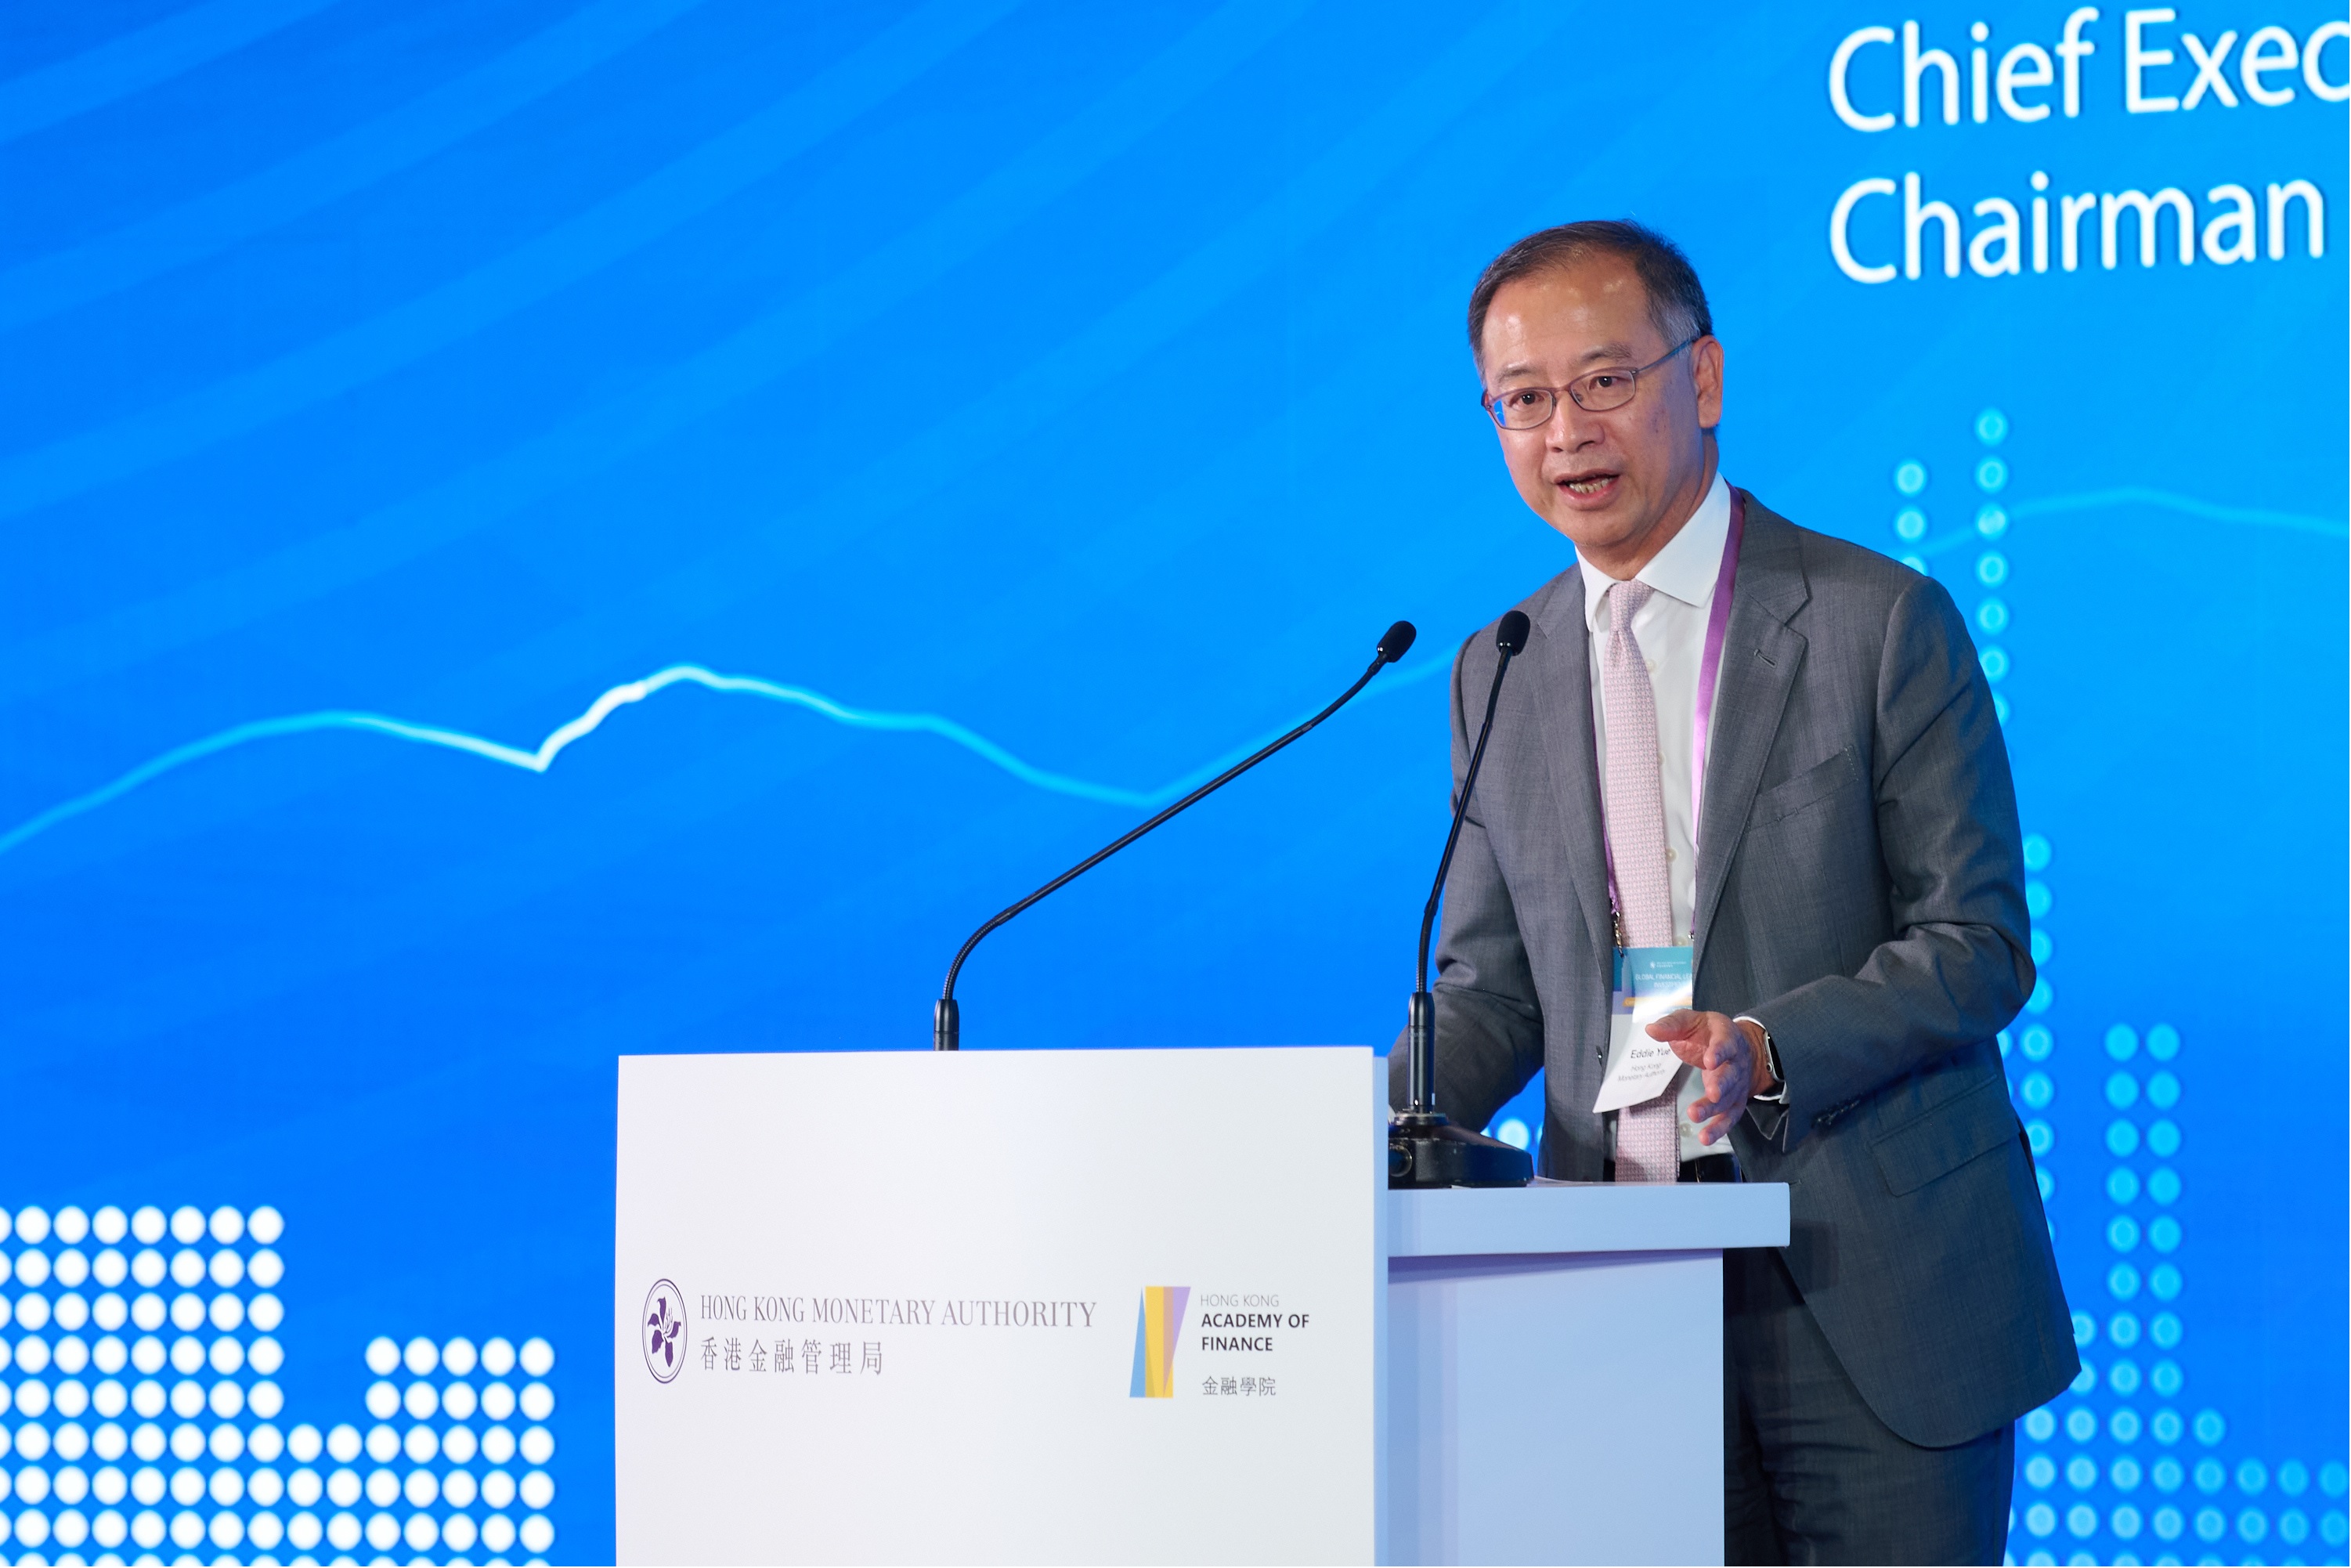 香港金融管理局总裁余伟文为11月3日举行的国际金融领袖投资峰会「与国际投资者对话」研讨会致闭幕辞。